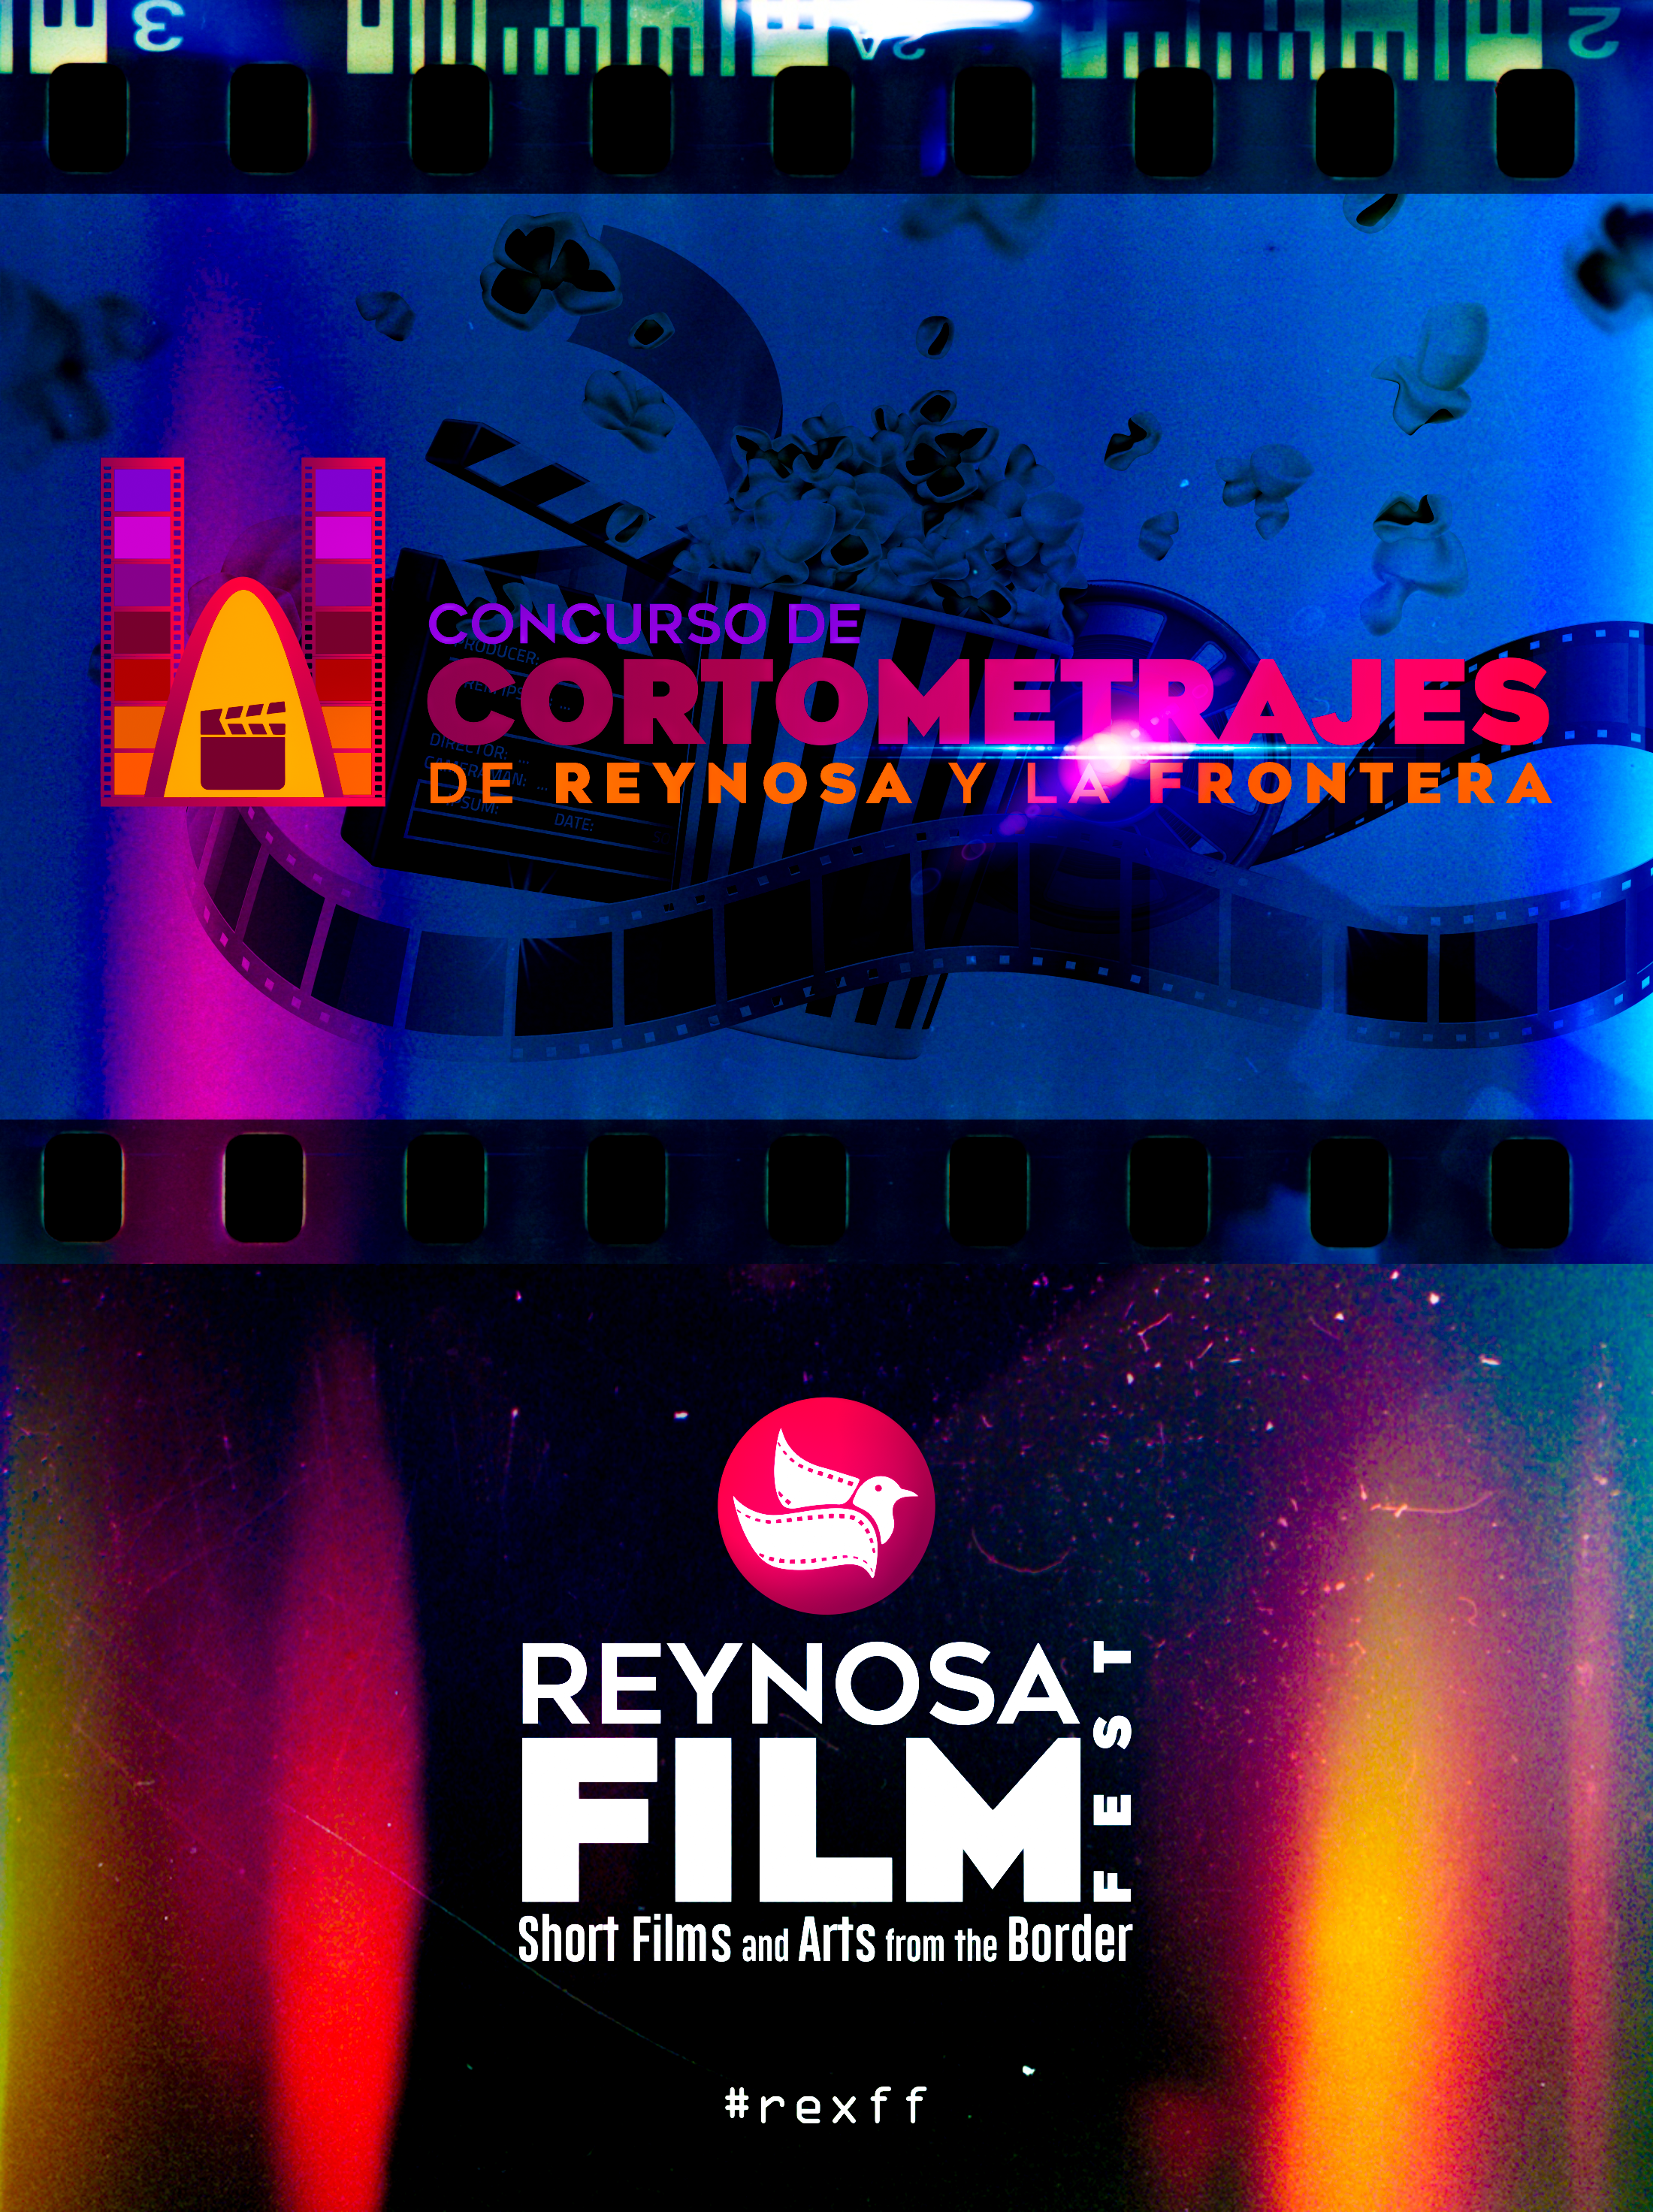 Poster del Reynosa Film Fest diseñado por Cinefilmico.